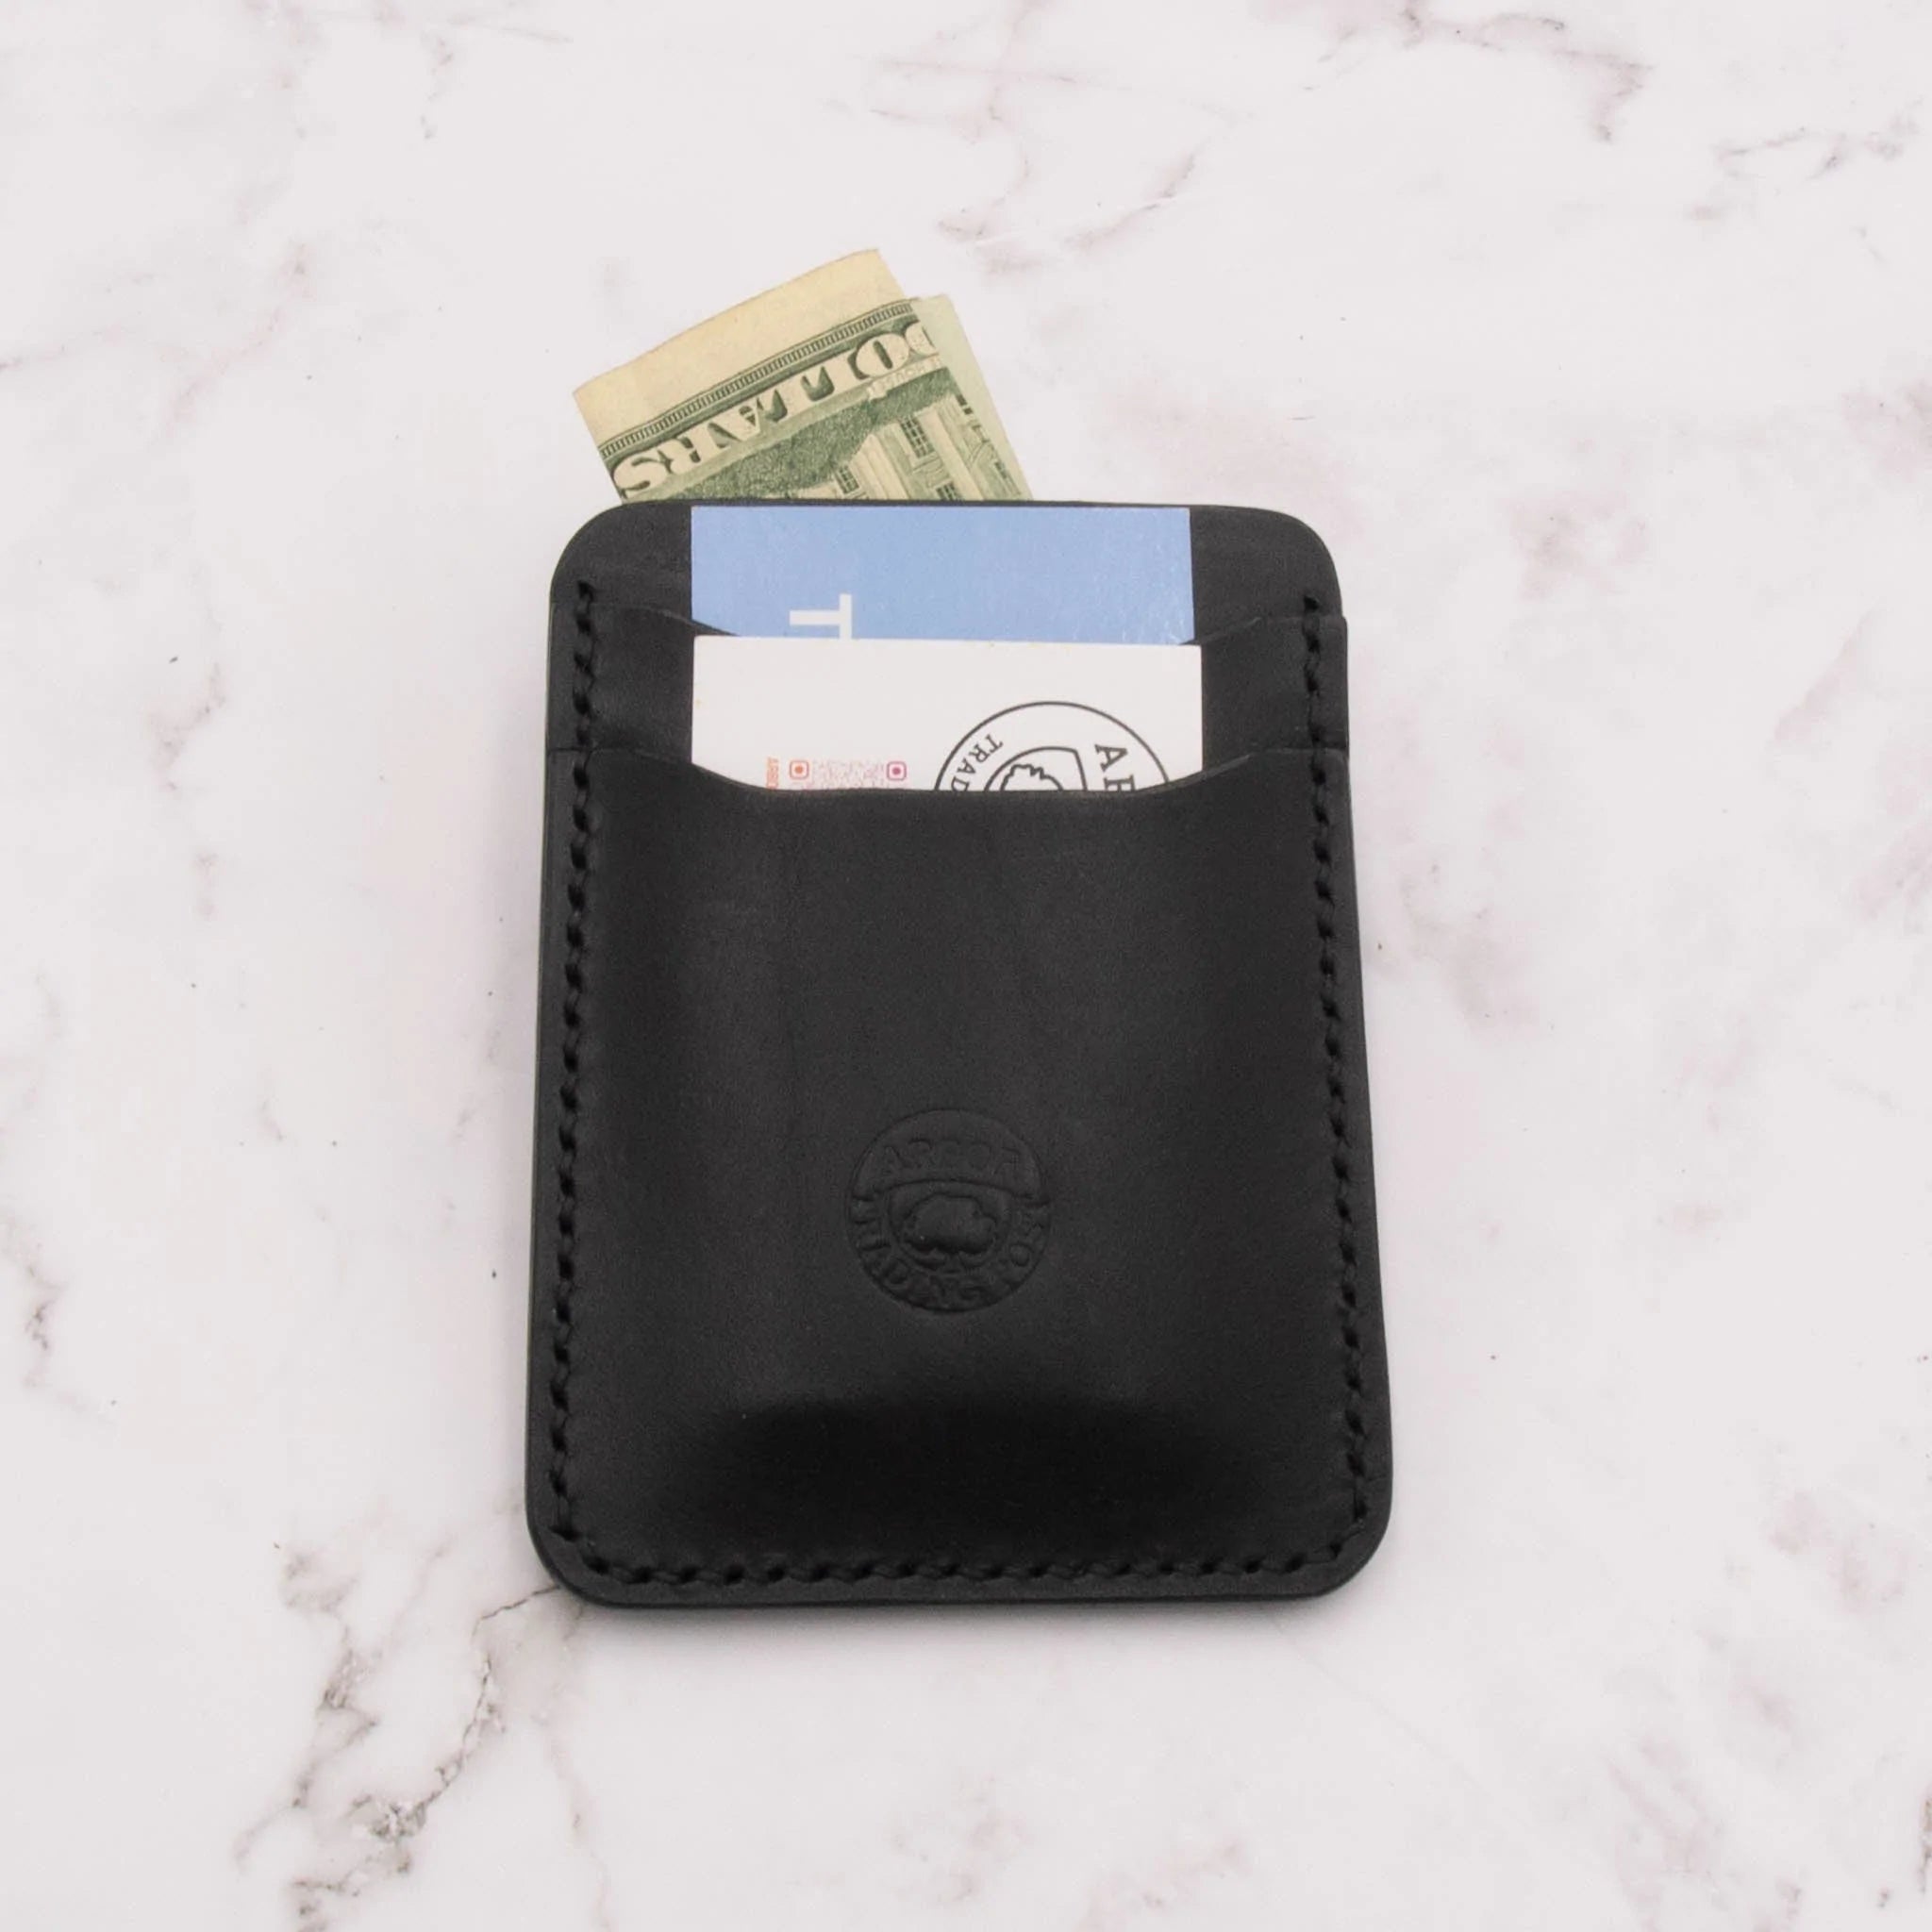 Cheekoo's Handcrafted Leather Card Holder Wallet, 5 Pocket Slim Design